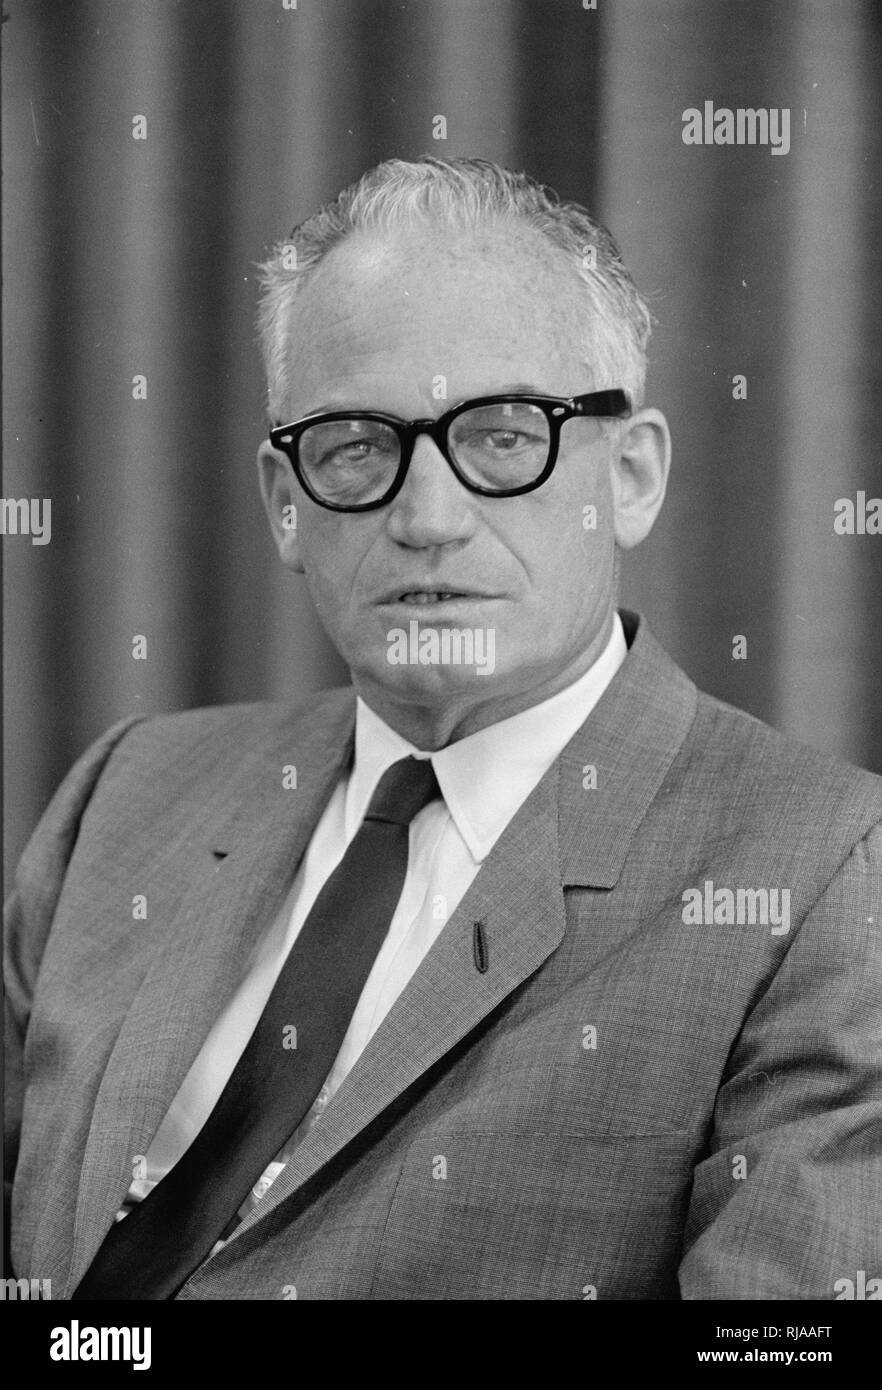 Barry Goldwater (1909 - 1998), uomo politico americano, imprenditore, e l'autore. cinque-termine degli Stati Uniti il senatore da Arizona (1953-65, 1969-87) e il Partito Repubblicano il candidato alla presidenza degli Stati Uniti nel 1964 elezione Foto Stock